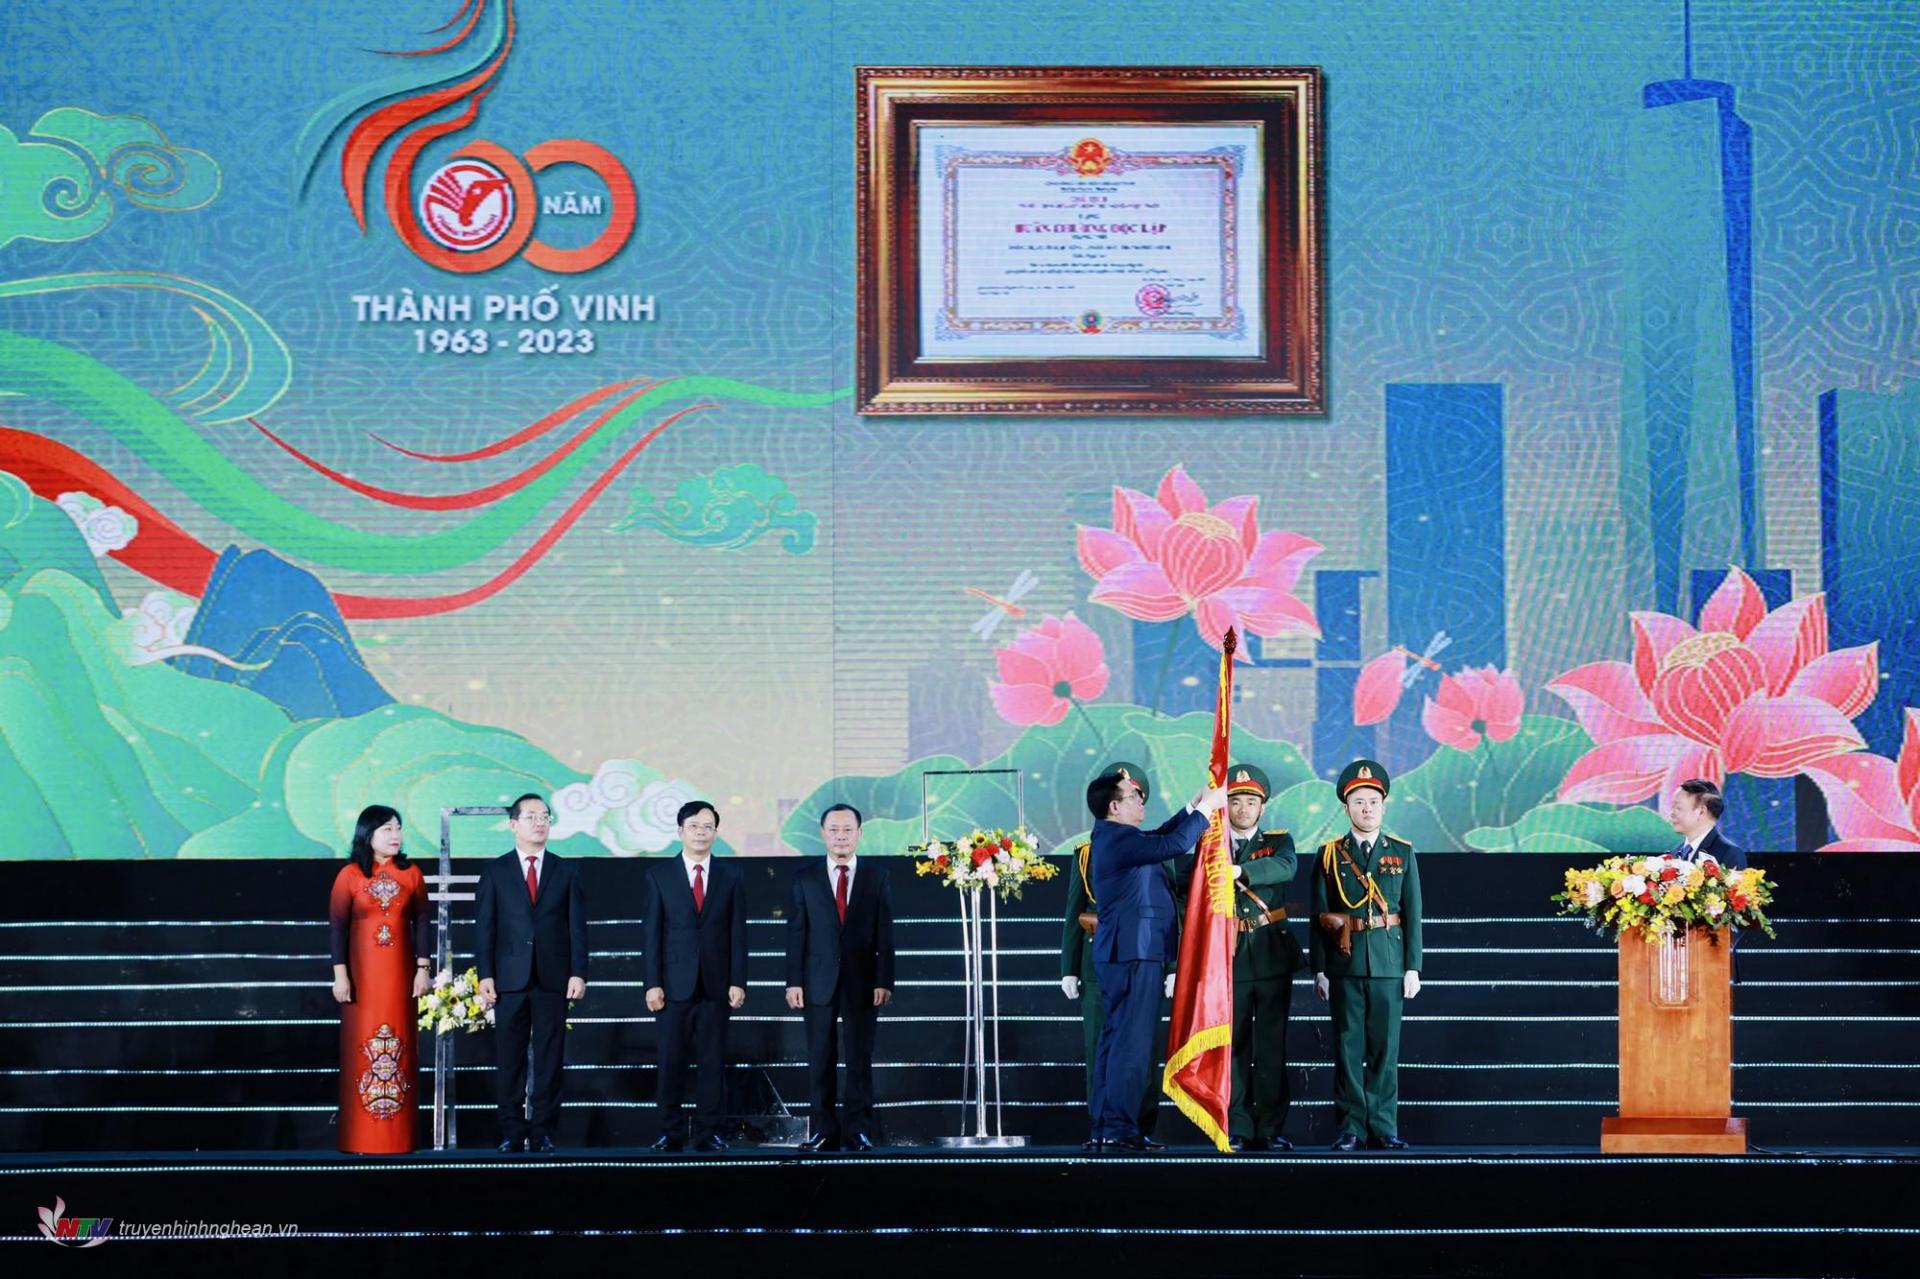 Đồng chí Vương Đình Huệ, Ủy viên Bộ Chính trị, Chủ tịch Quốc hội nước Cộng hòa xã hội chủ nghĩa Việt Nam thay mặt lãnh đạo Đảng, Nhà nước gắn Huân chương lên cờ truyền thống